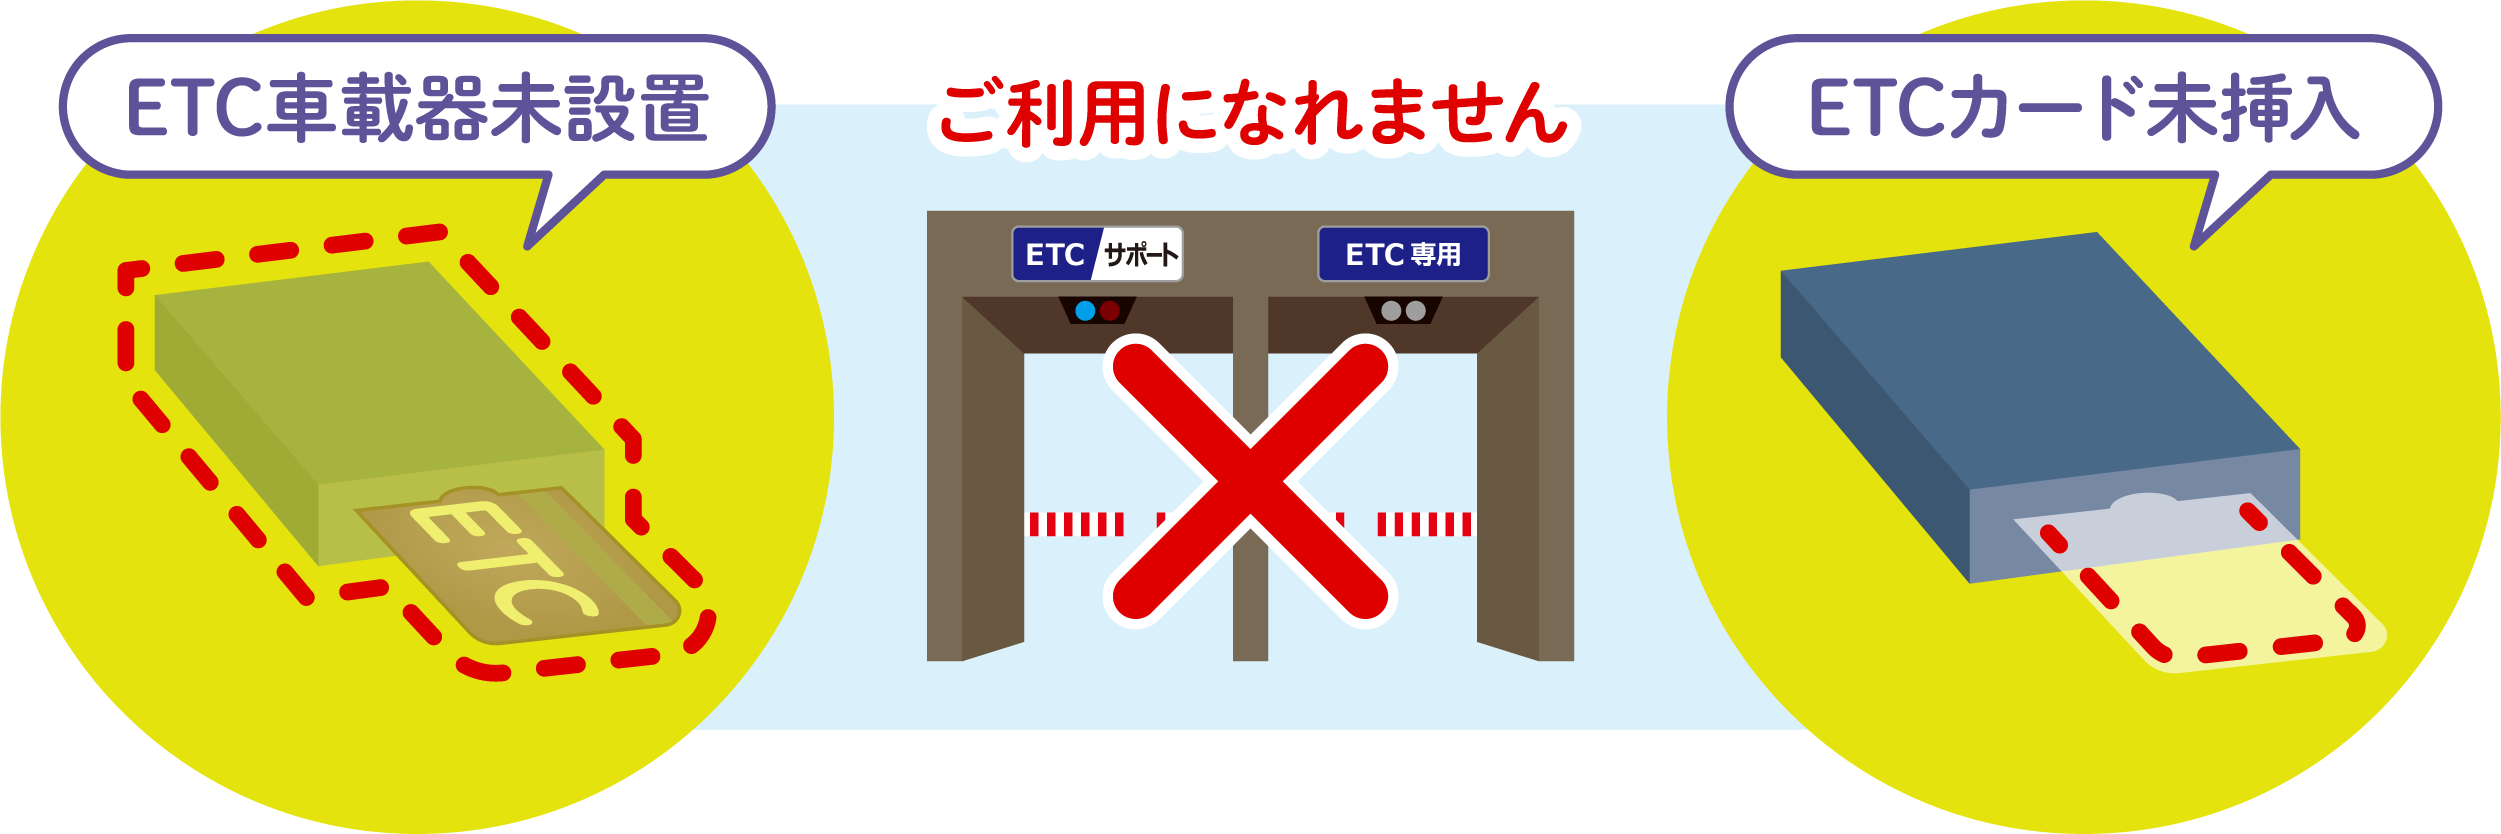 ETC専用料金所について | ETC各種サービス | ETC・割引案内 | 料金・交通 | 高速道路・高速情報はNEXCO 中日本